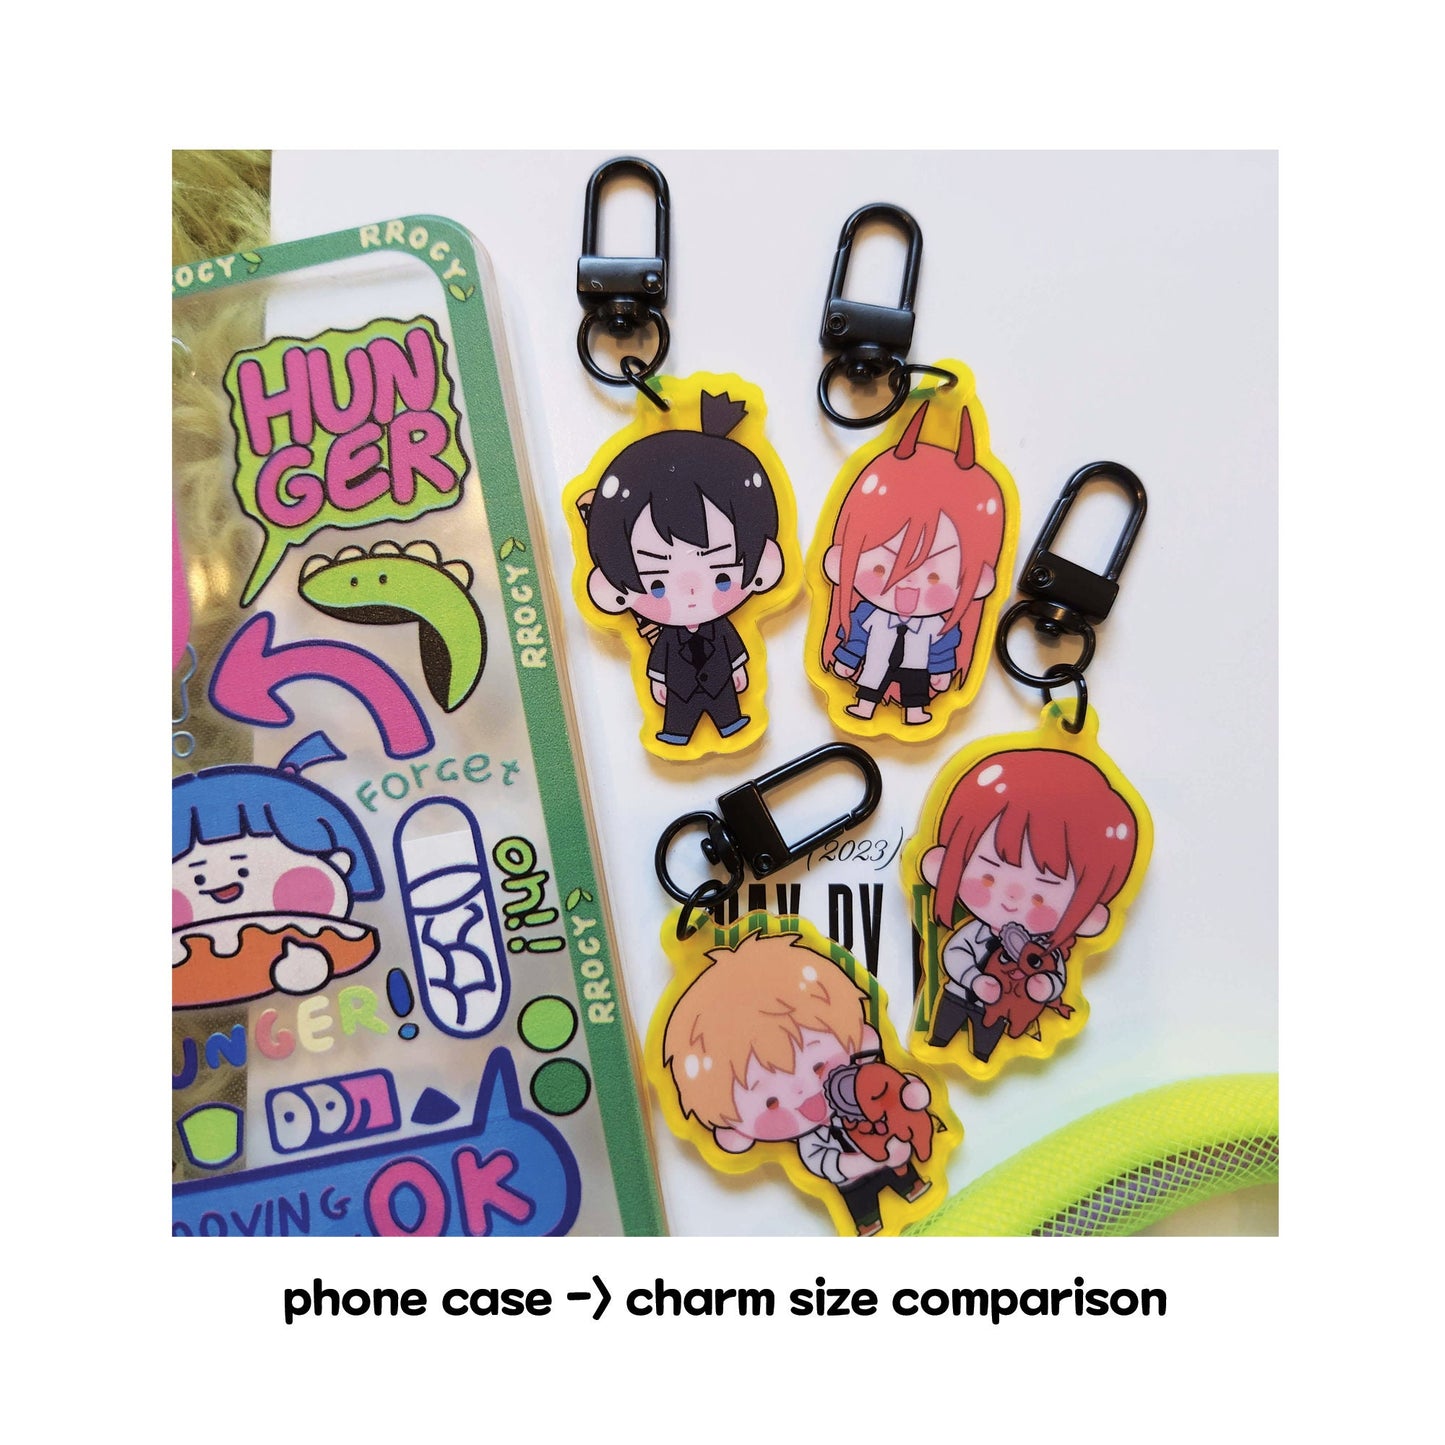 chainsaw anime chibi cute phone charms